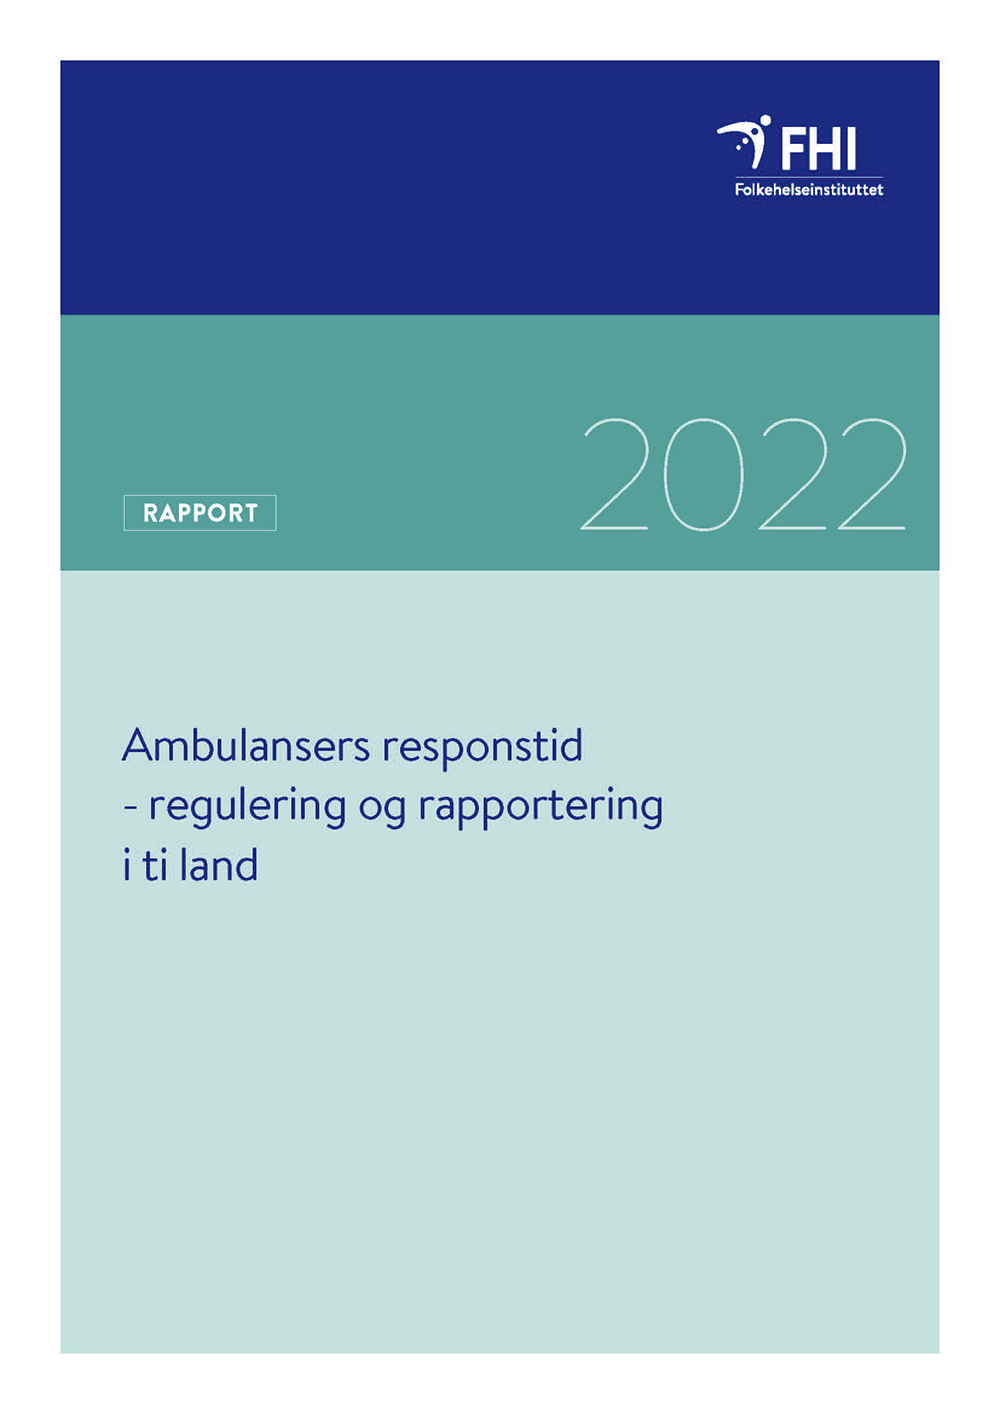 Tempi di risposta dell’ambulanza – regolamentazione e segnalazione in dieci paesi